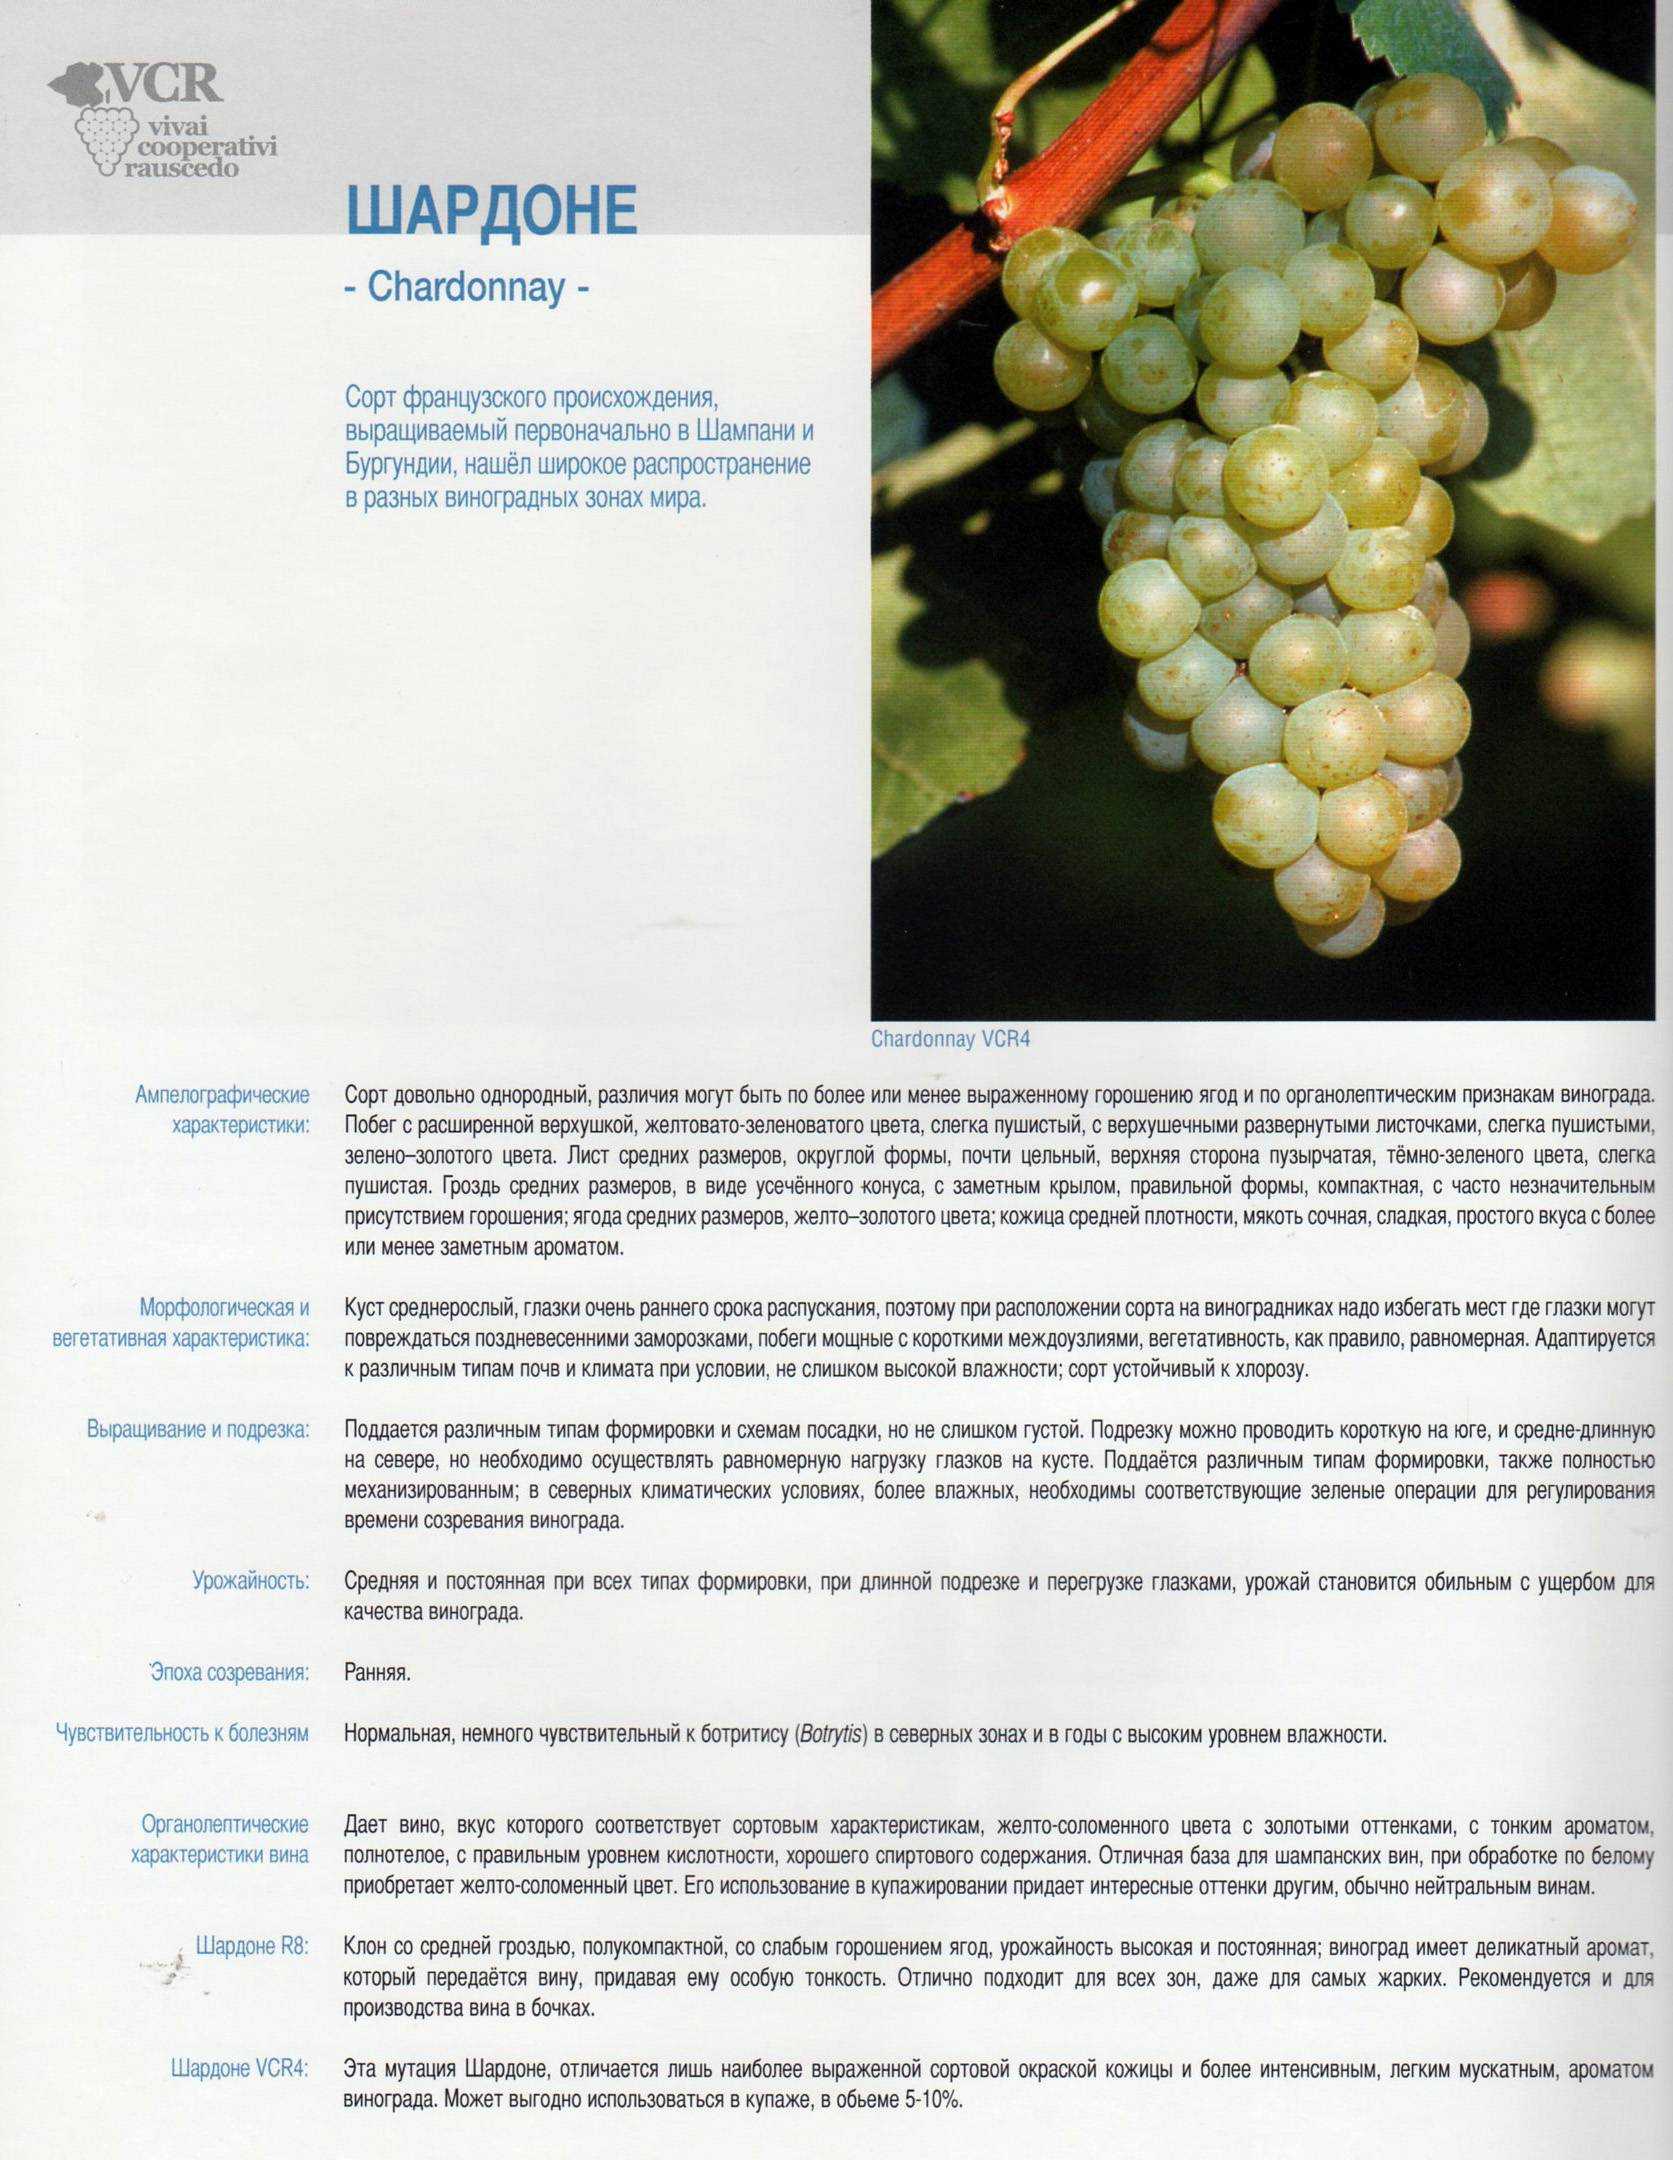 Виноградный сорт гренаш: разновидности и использование винограда гренаш в виноделии